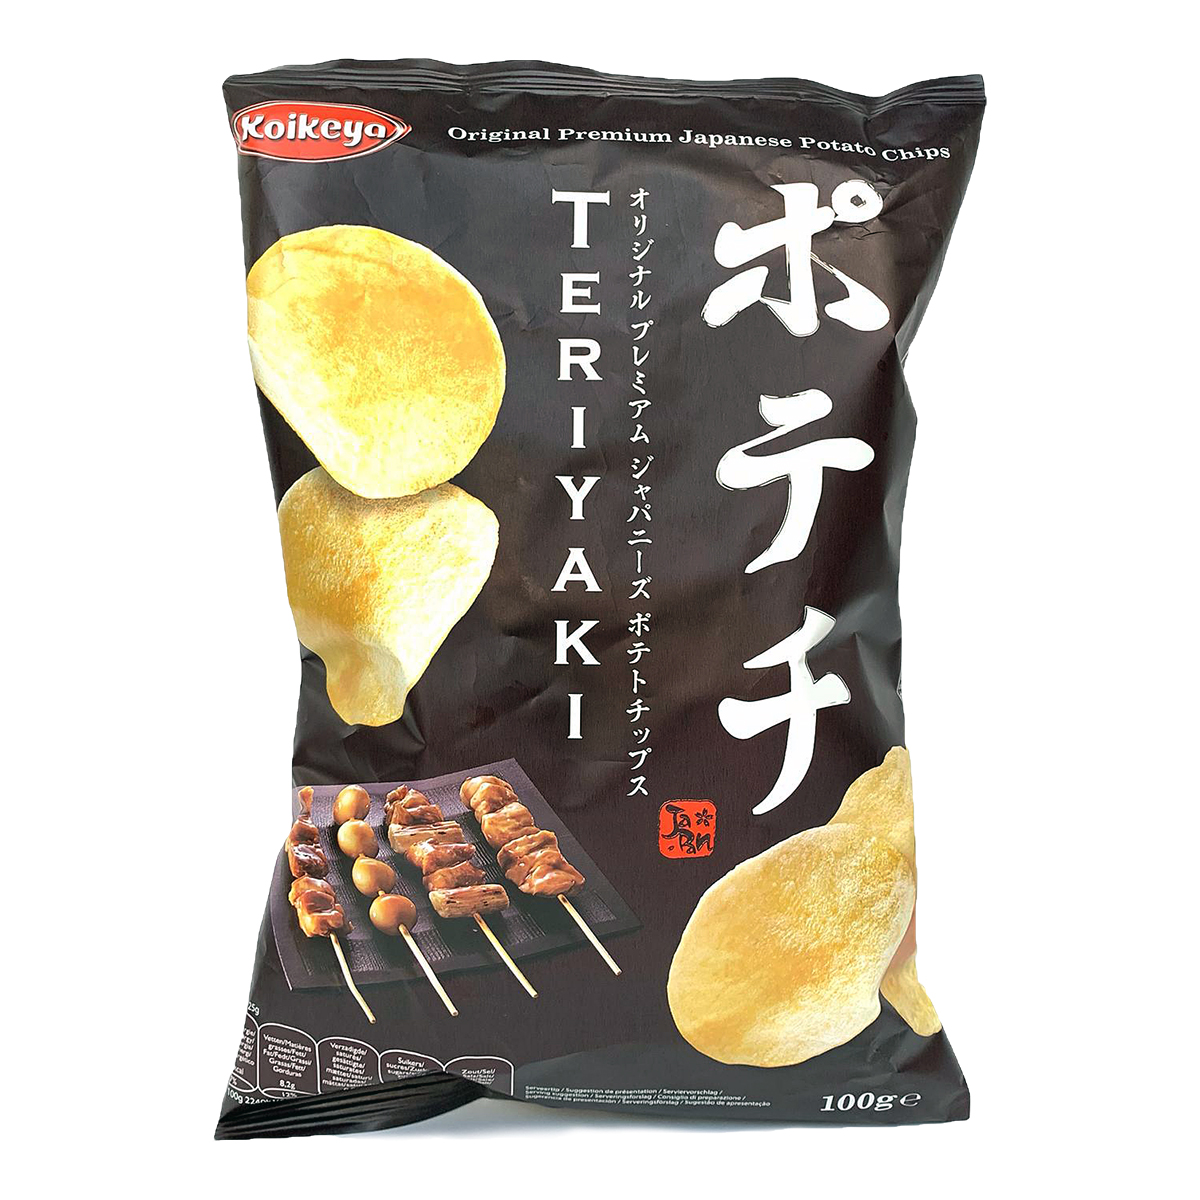 Snacks si chipsuri - Teriyaki Potato Chips KOIKEYA 100g, asianfood.ro